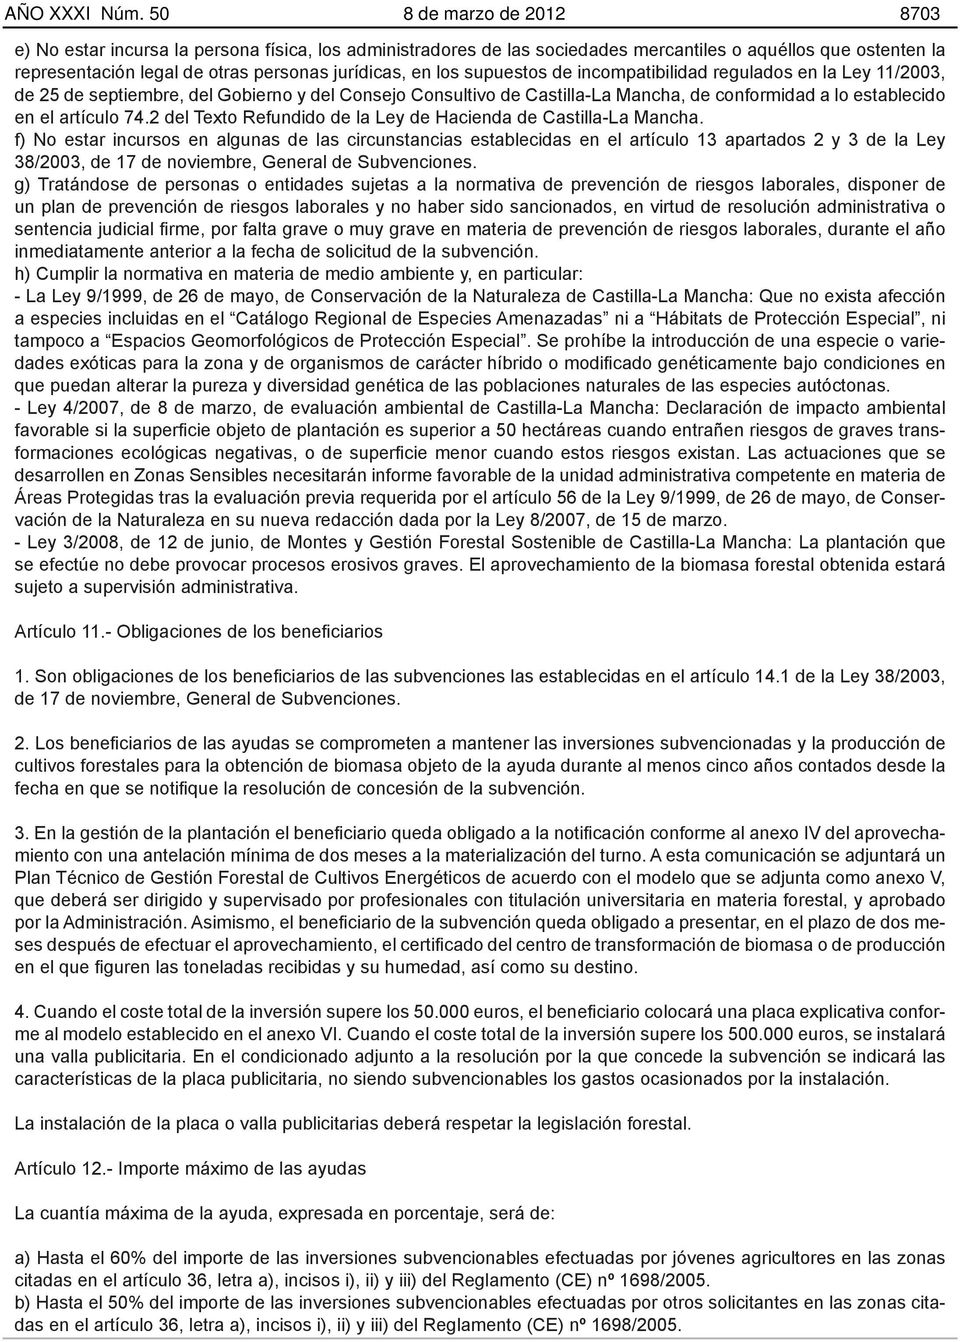 supuestos de incompatibilidad regulados en la Ley 11/2003, de 25 de septiembre, del Gobierno y del Consejo Consultivo de Castilla-La Mancha, de conformidad a lo establecido en el artículo 74.